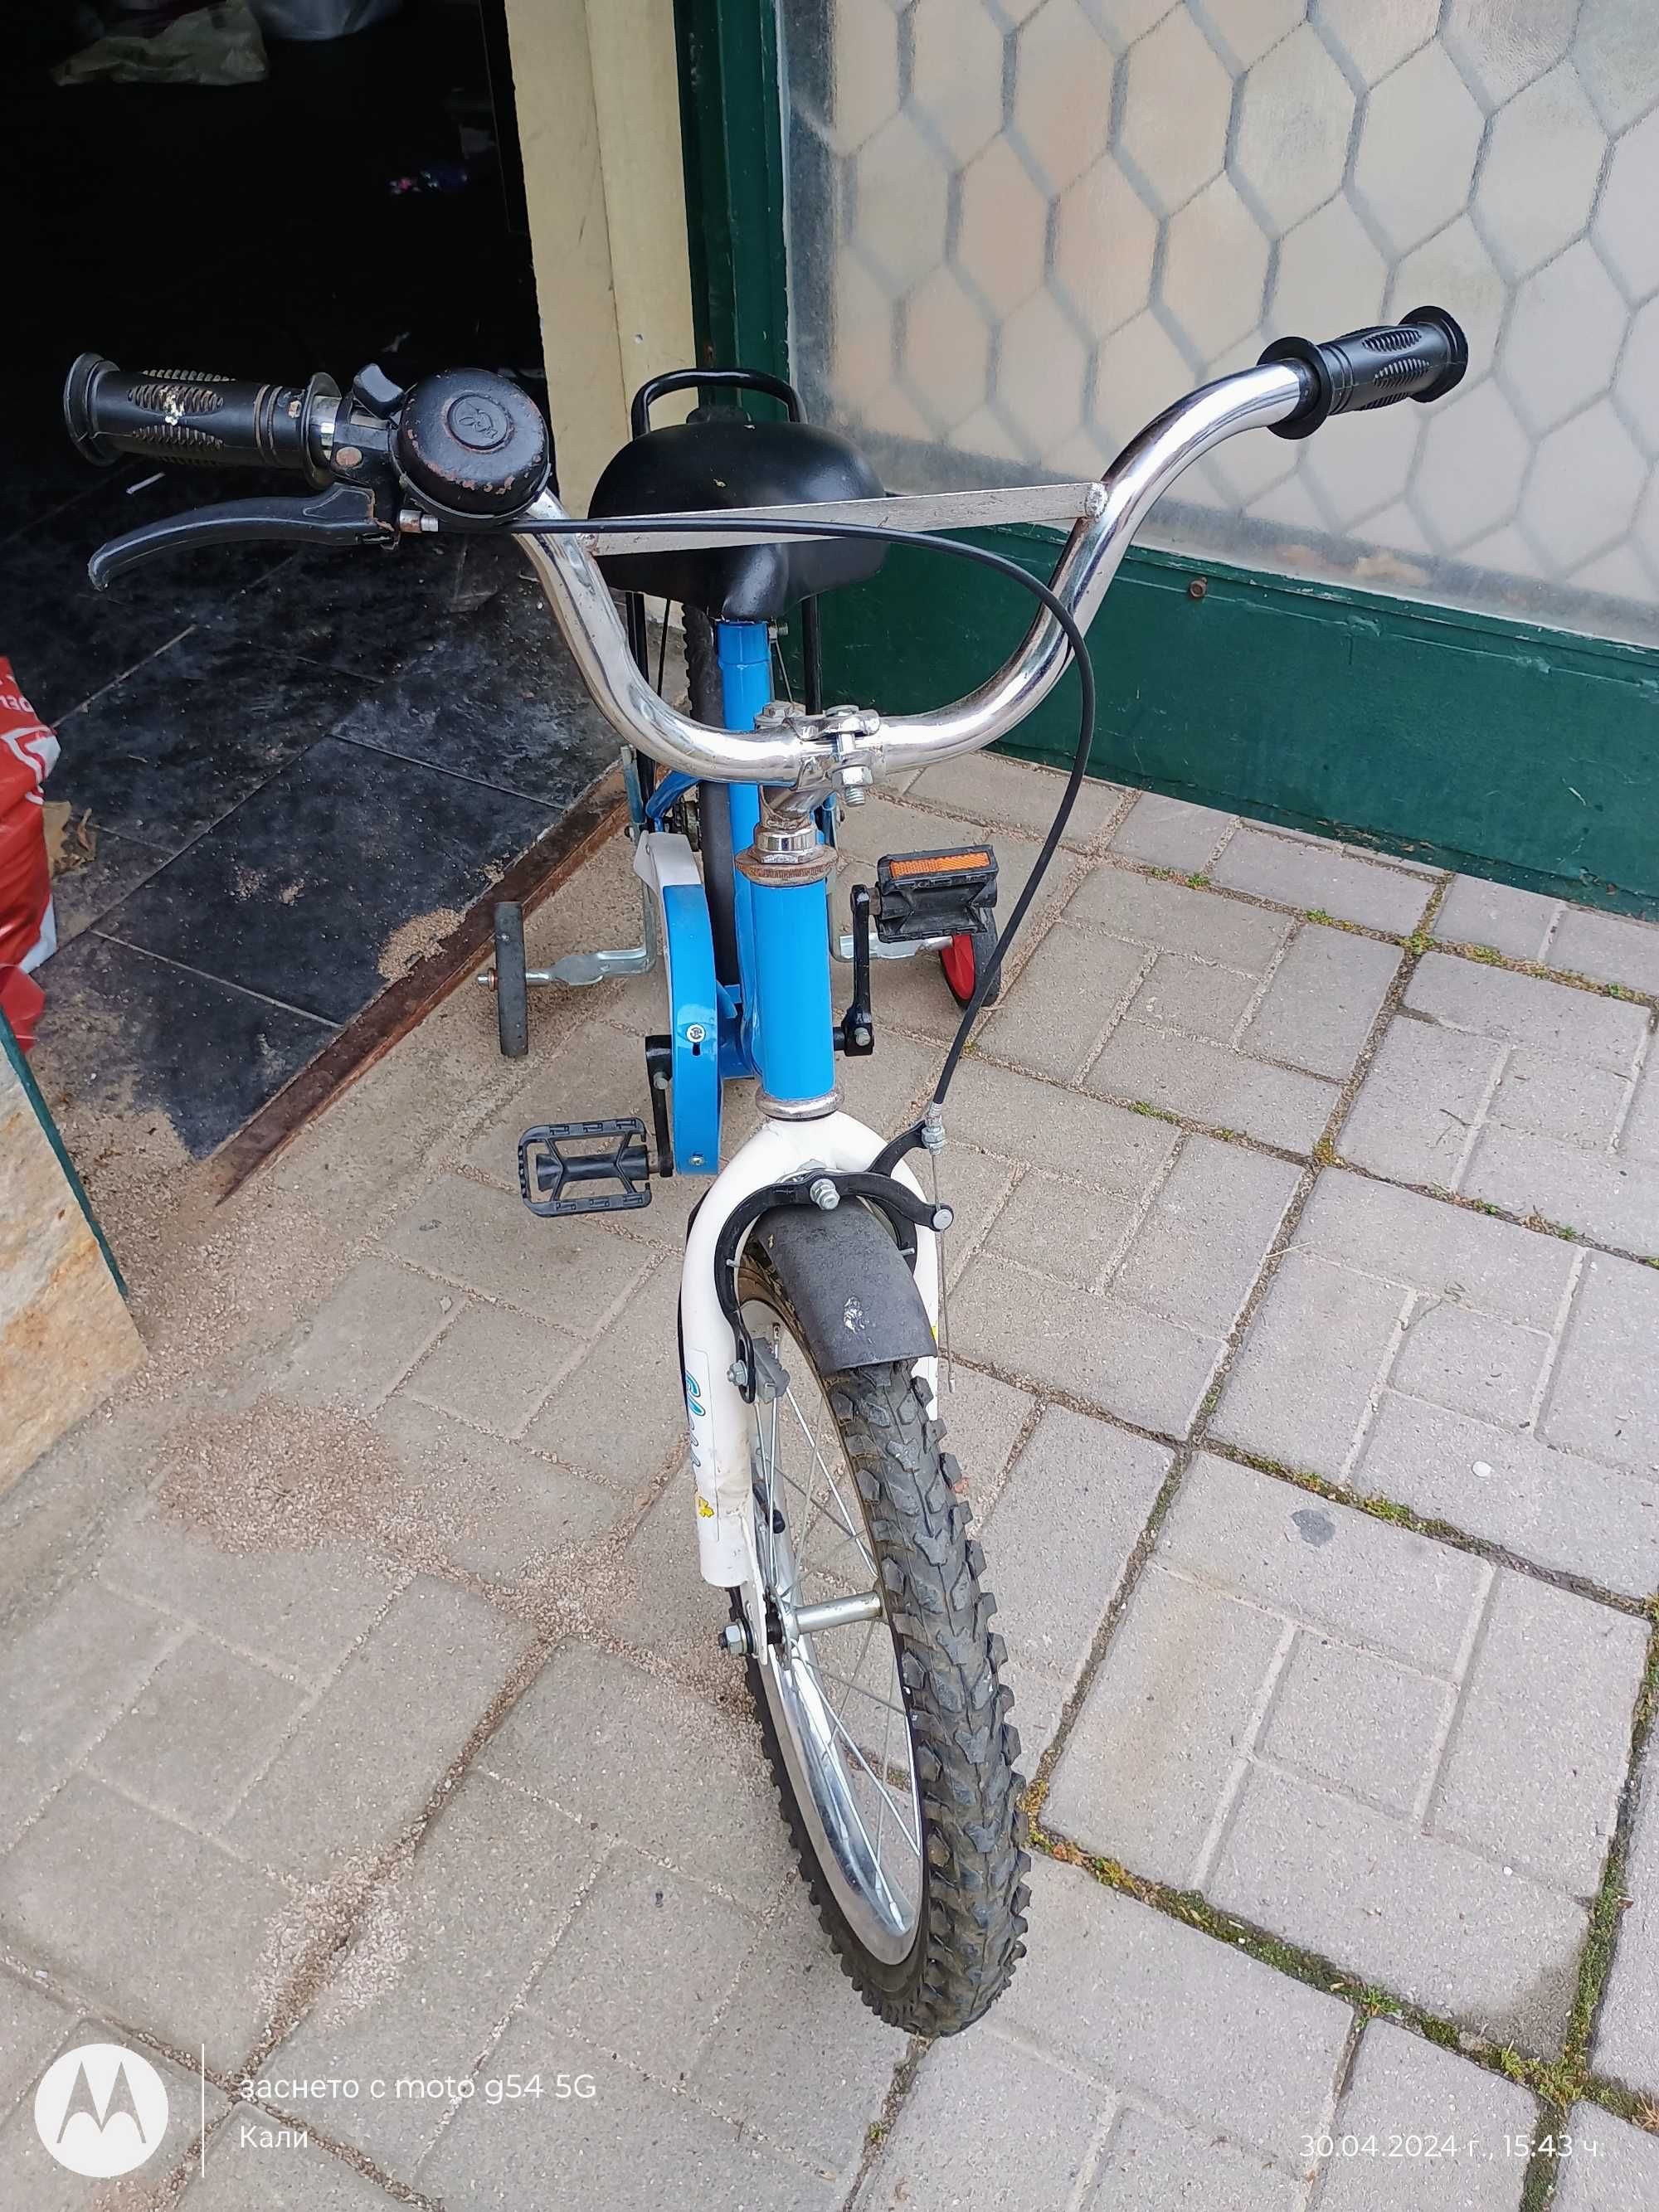 Децко колело в син цвят